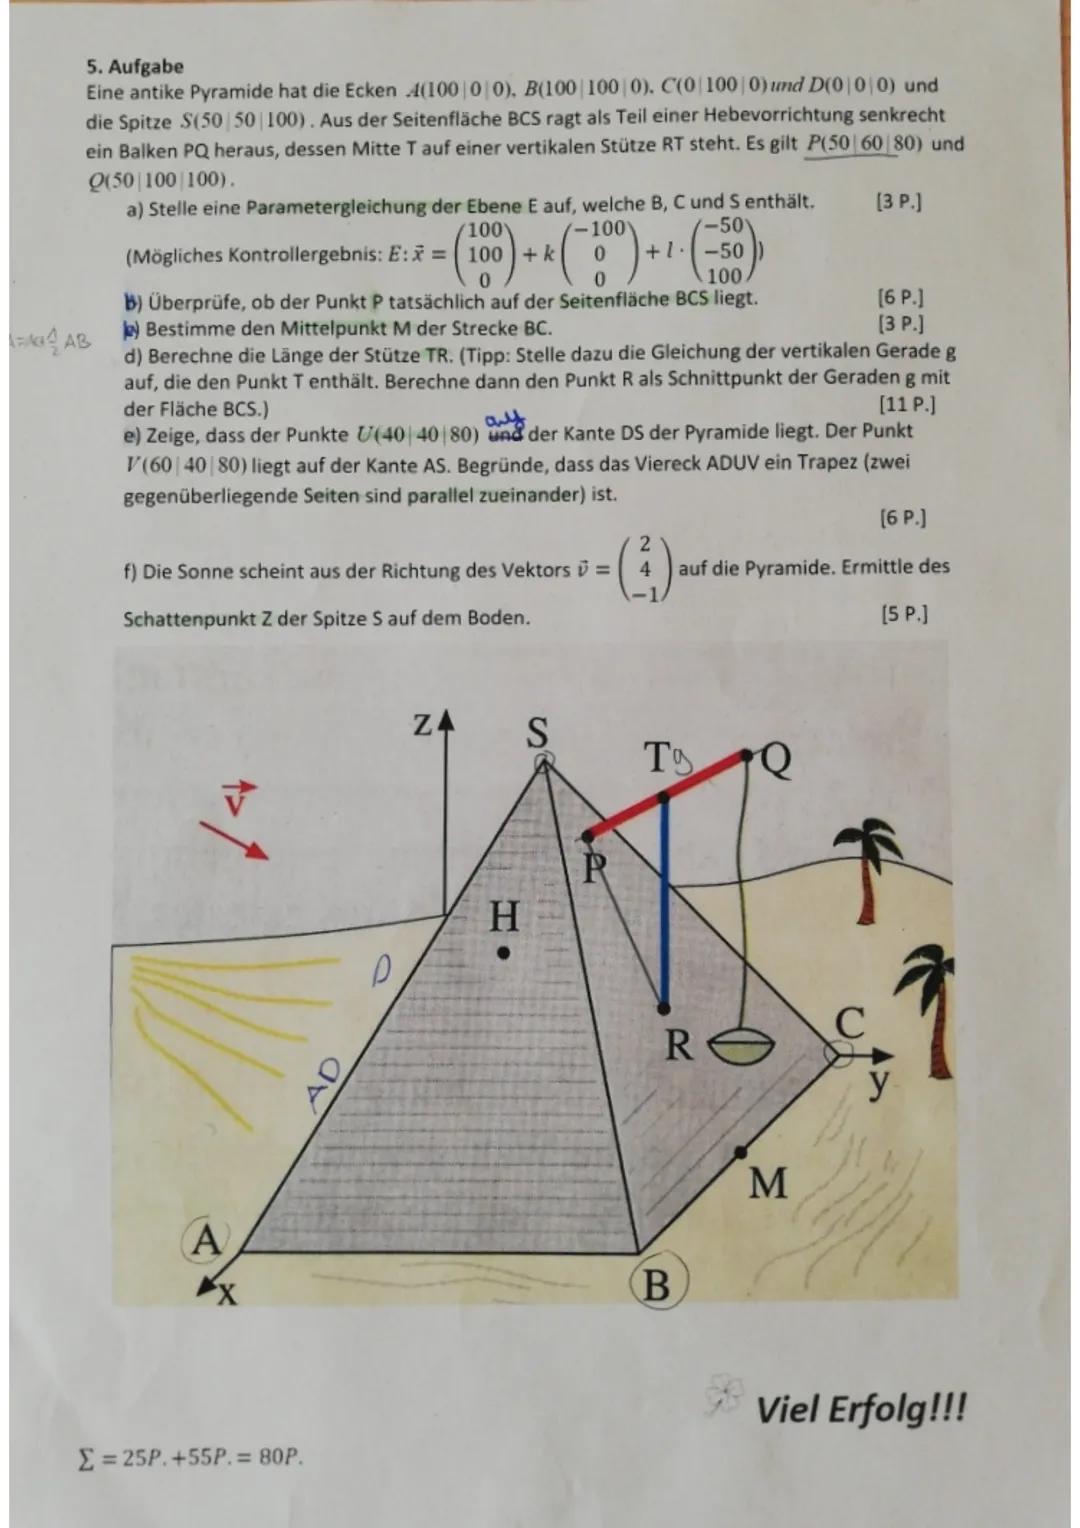 5. Aufgabe
Eine antike Pyramide hat die Ecken 4(100|0|0), B(100 100|0). C(0|100 | 0) und D(0 0 0) und
die Spitze S(50|50|100). Aus der Seite